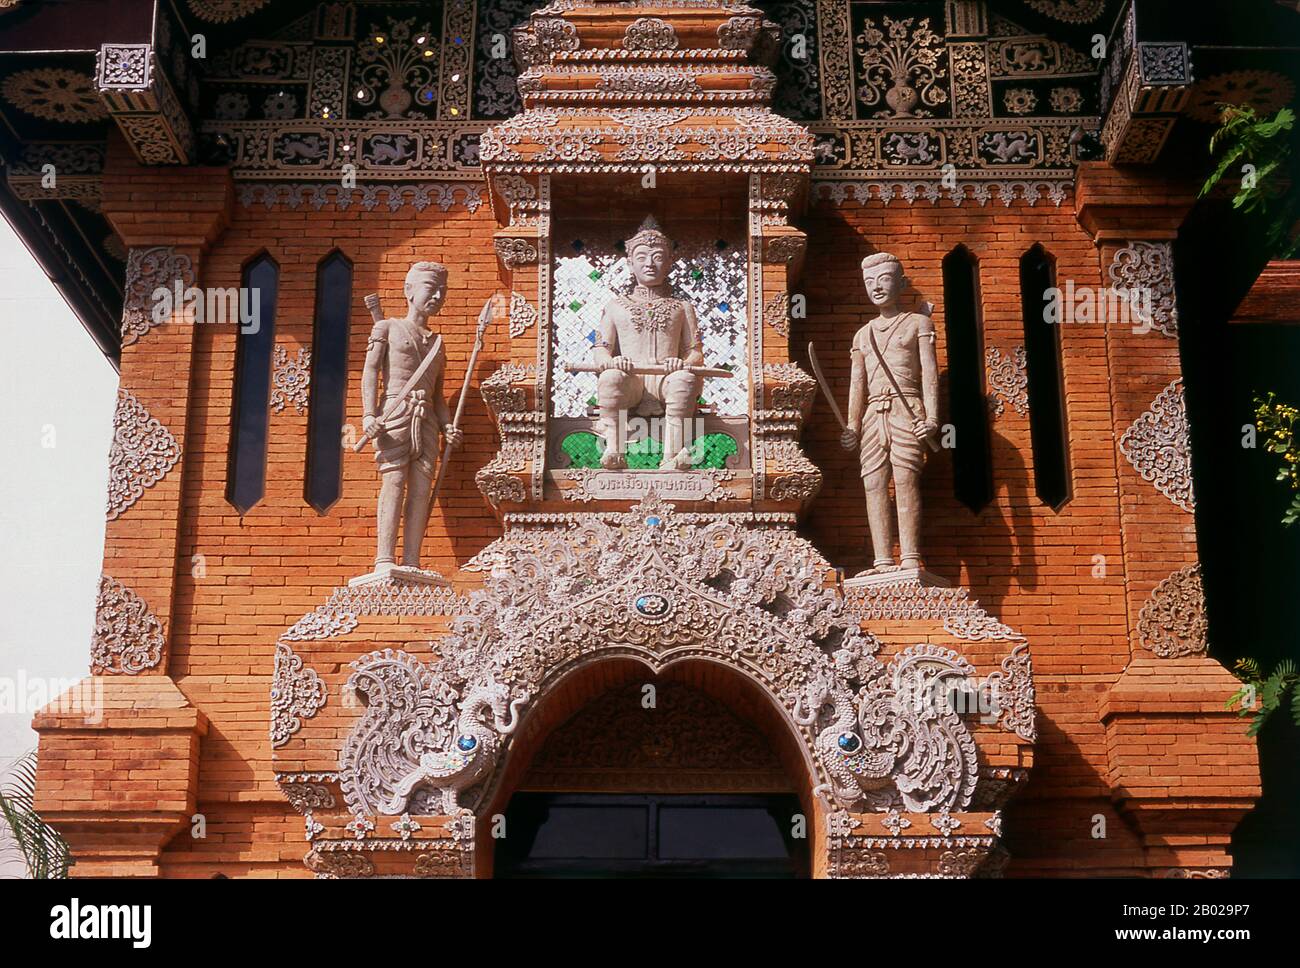 Wat Lok Moli oder "Topknot der Welt" wird von König Ku Na, dem 6. König der Mangrai-Dynastie (1263-1578), gegründet, der zwischen 1367 und 1388 von Chiang Mai aus das Königreich Lan Na regierte. Es war wahrscheinlich ein königlicher Tempel, da die nördliche Seite der Stadt damals ein königliches Revier war; sicherlich genoss das Heiligtum eine lange und enge Verbindung mit den Mangrai-Herrschern. Laut einer Mitteilung am Südeingang des Tempels lud König Ku Na eine Gruppe von zehn aus Birma stammenden Monstern ein, in Chiang Mai zu leben und Lok Moli als Residenz für sie zu bieten. Der riesige Chedi t Stockfoto